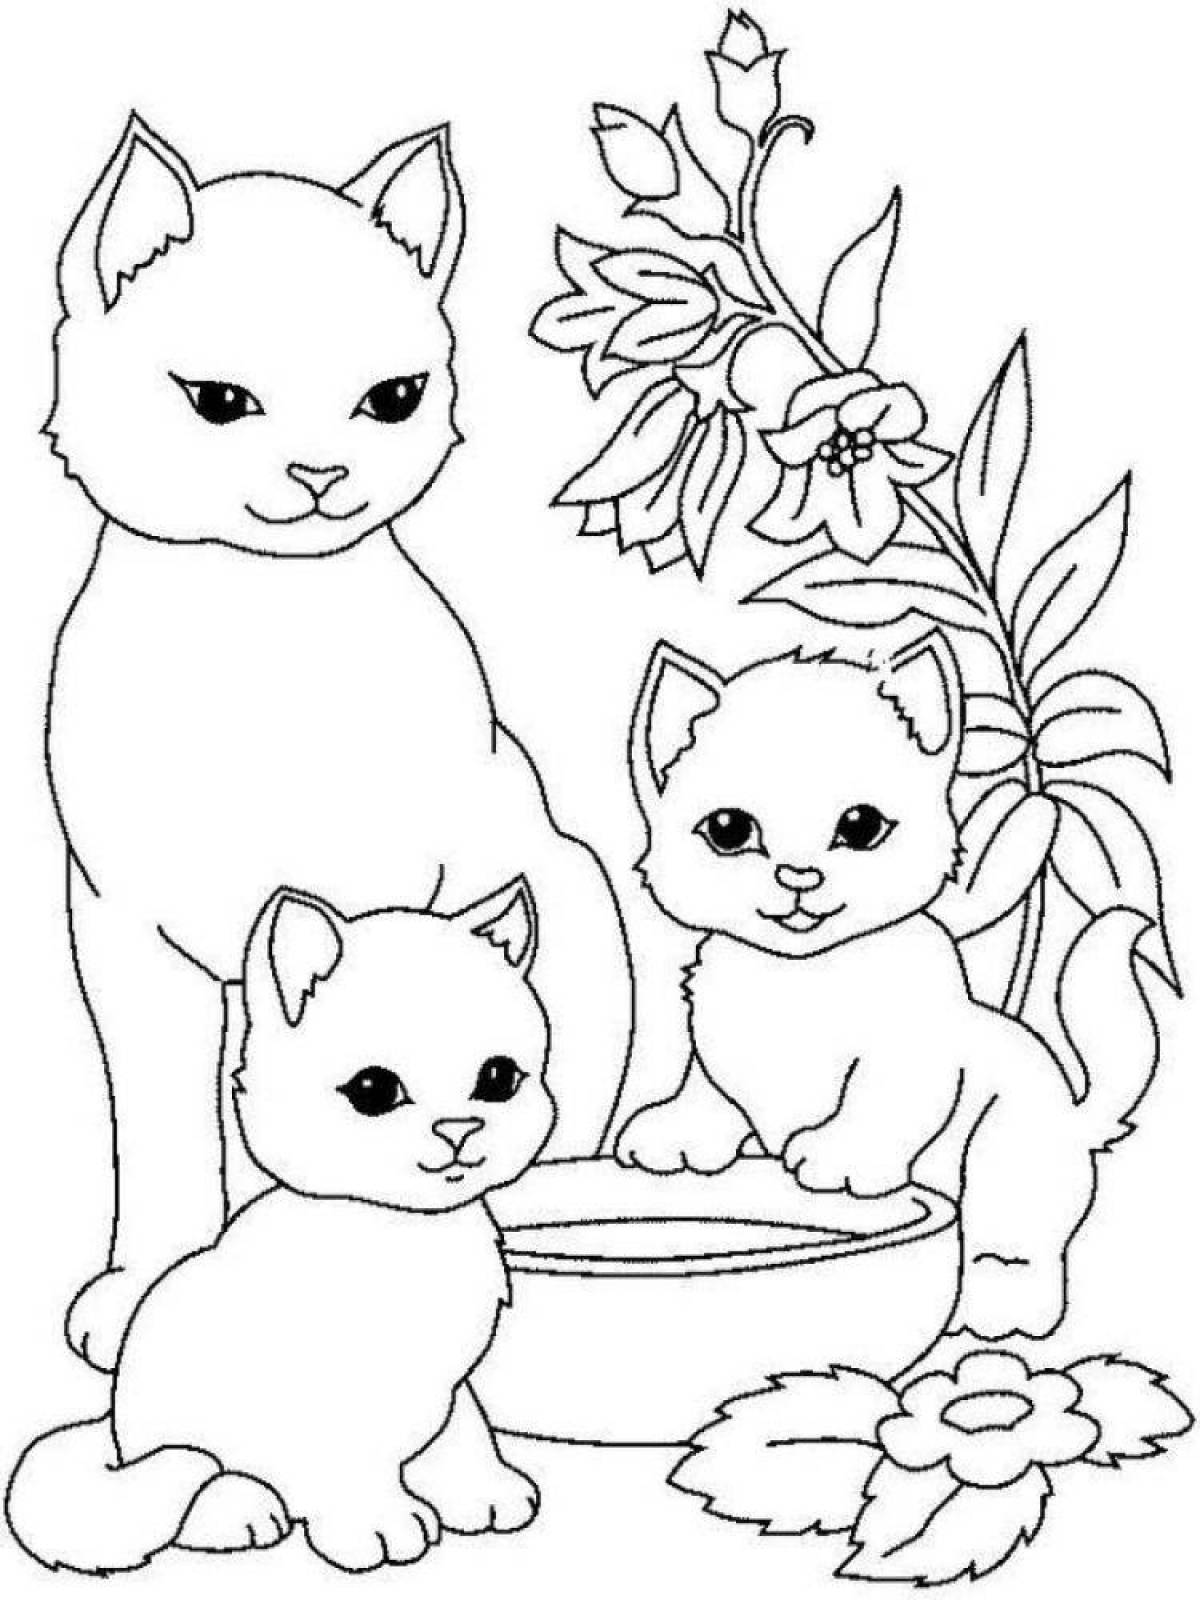 Fun coloring kitty